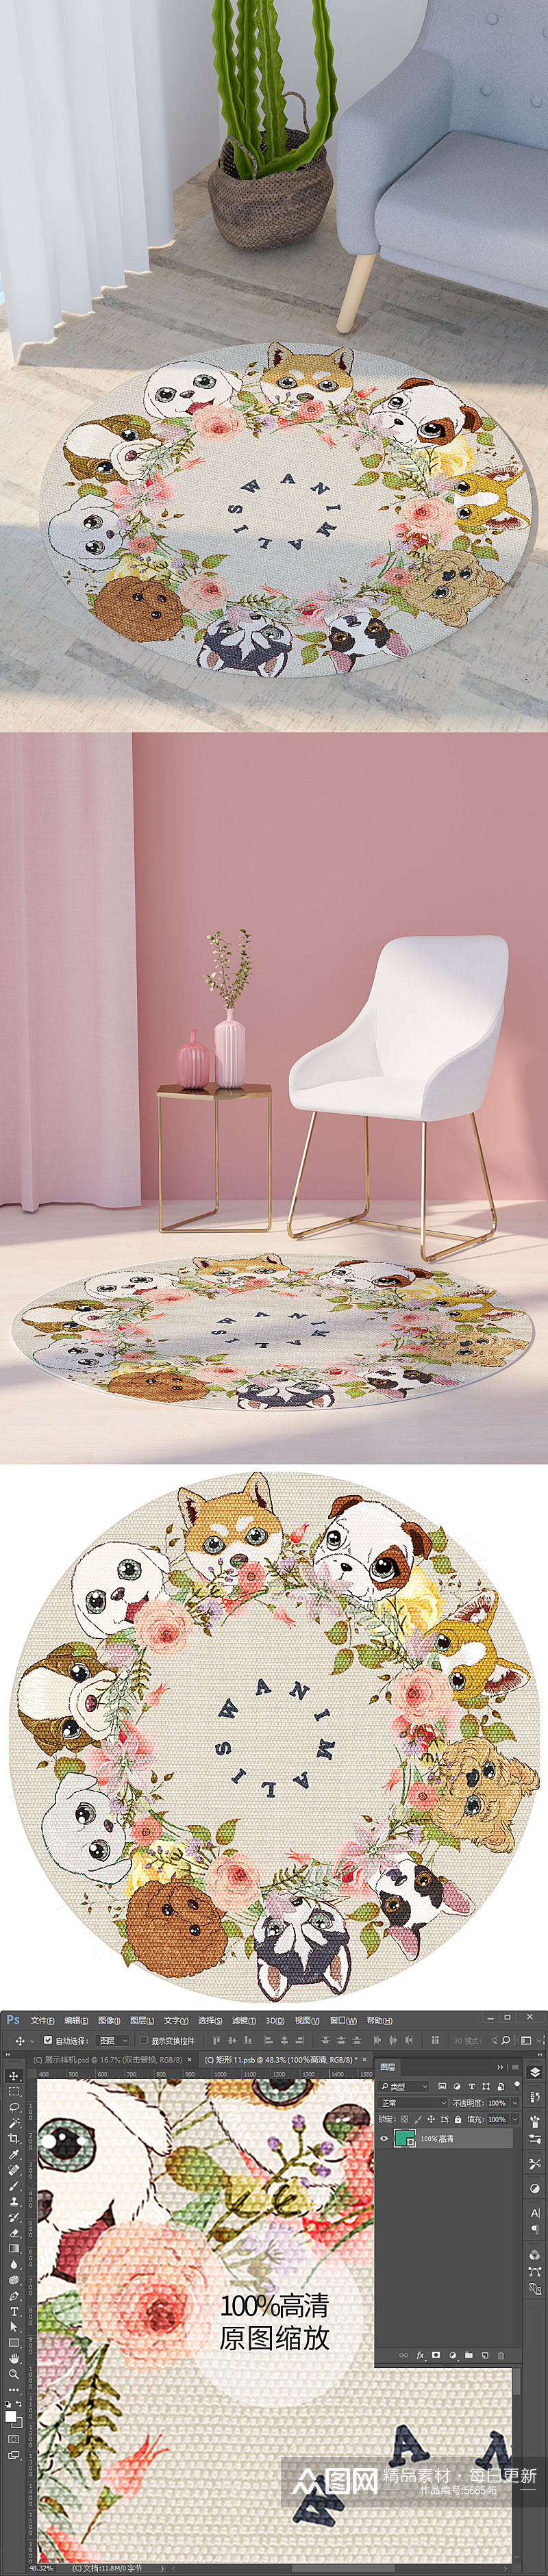 现代可爱卡通宠物狗狗花环圆形地毯图案素材